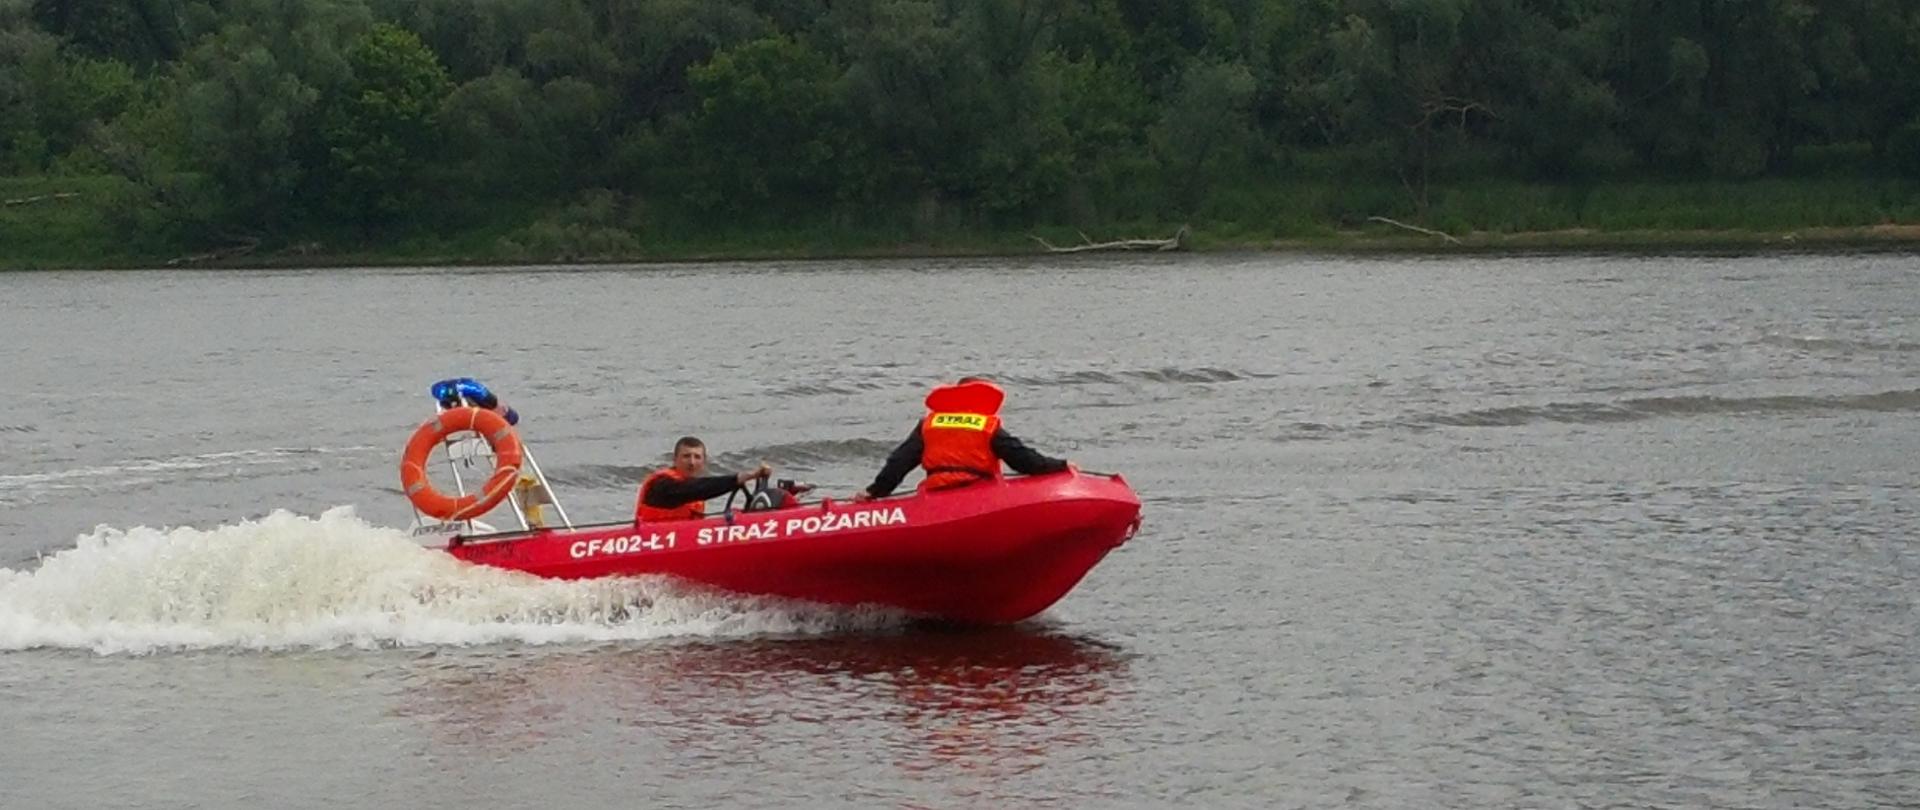 Zdjęcie przedstawia czerwoną łódź strażacką i obsługującego nią strażaka na rzece Wisła